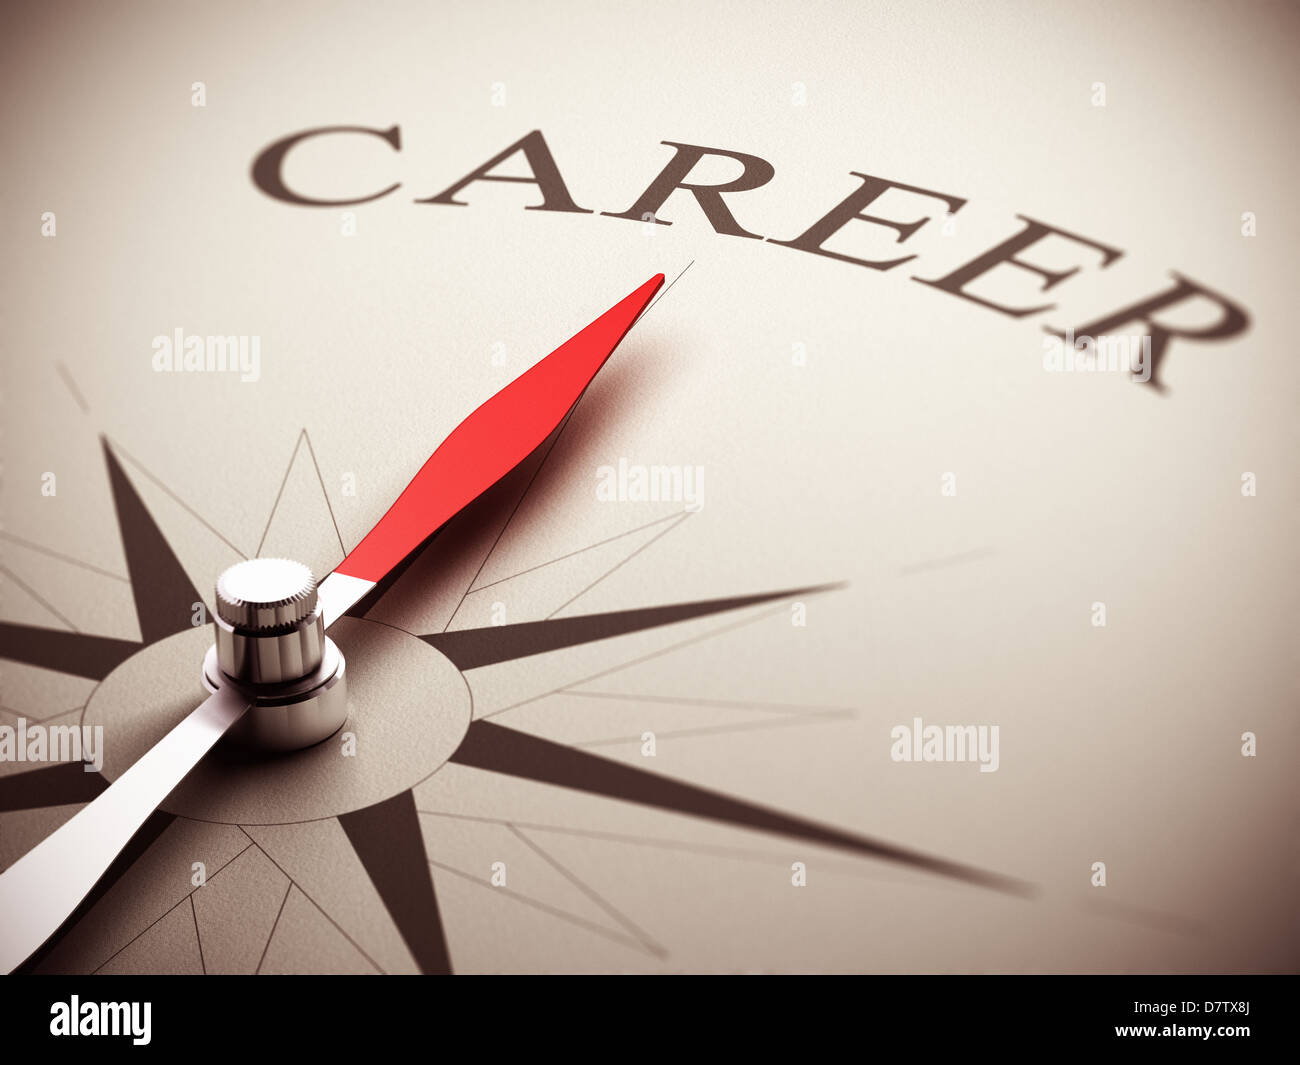 Una bussola ago rivolto la parola carriera, immagine adatta per le opportunità di carriera di gestione. 3D render illustrazione. Foto Stock